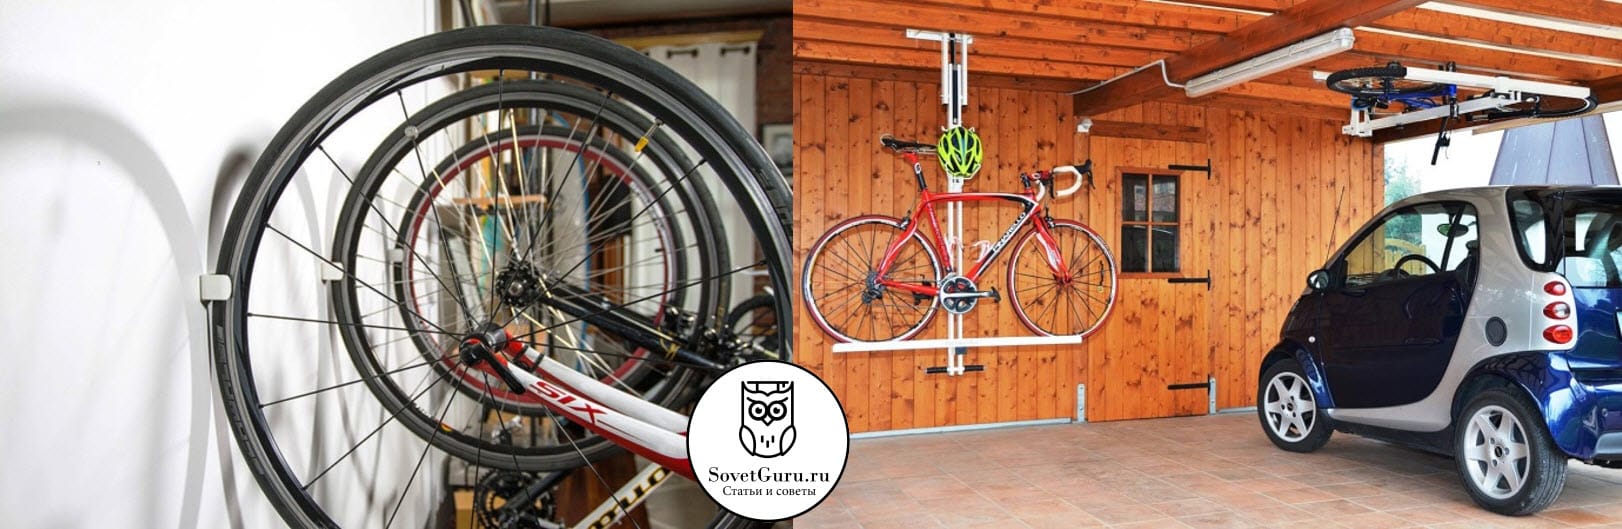 Как хранить велосипед зимой в гараже или подвале | Как хранить велосипед зимой: на балконе, в гараже, в квартире